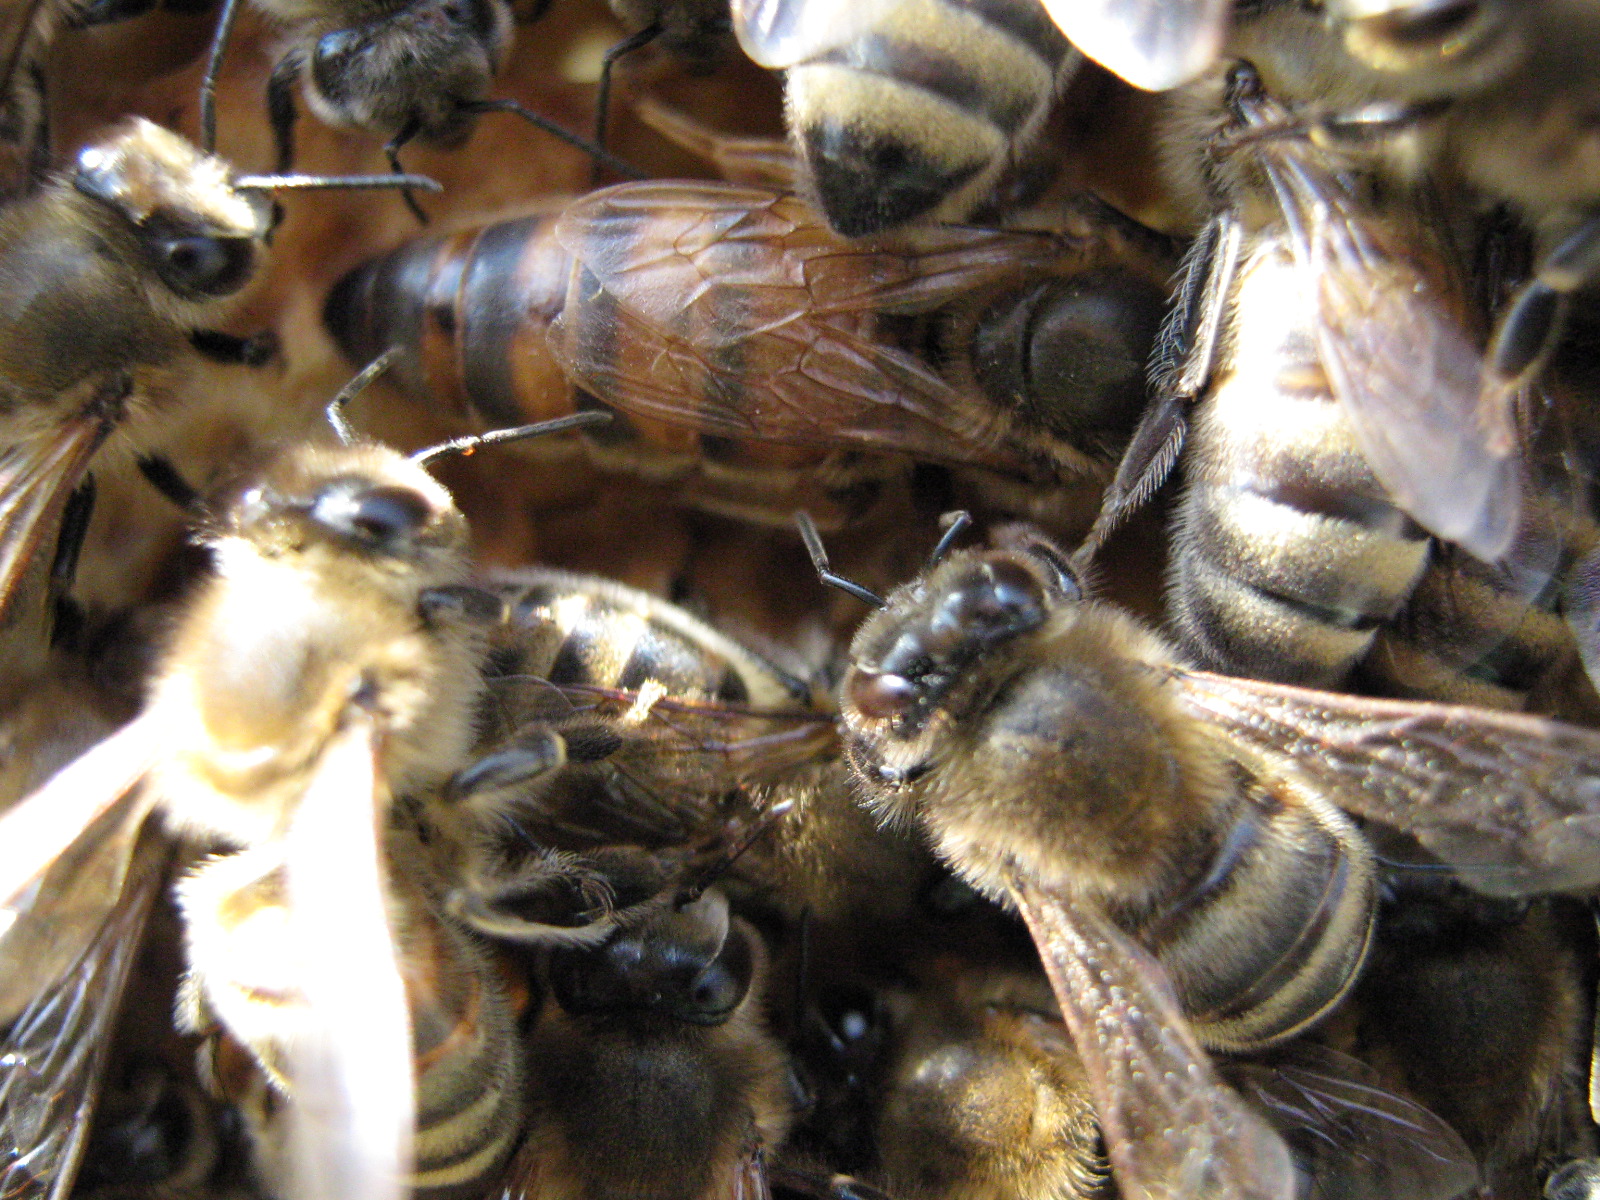 Окраска тела пчелы. Пчелы. Пчелиная матка. Матка пчелы. Много пчел.